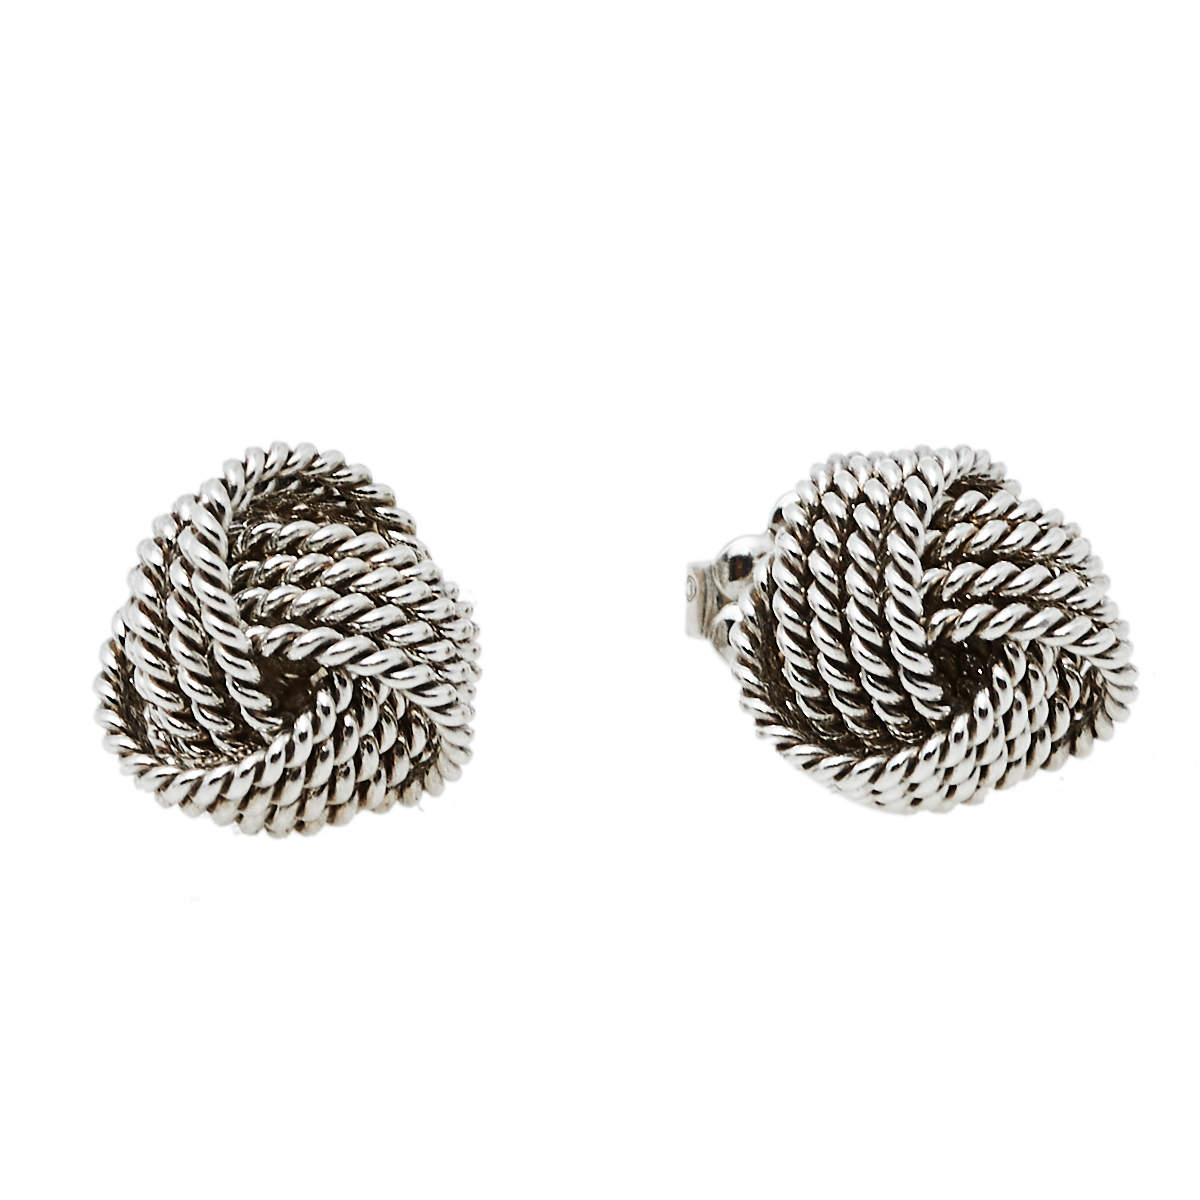 Tiffany & Co. Tiffany Twist Knot Silver Stud Earrings